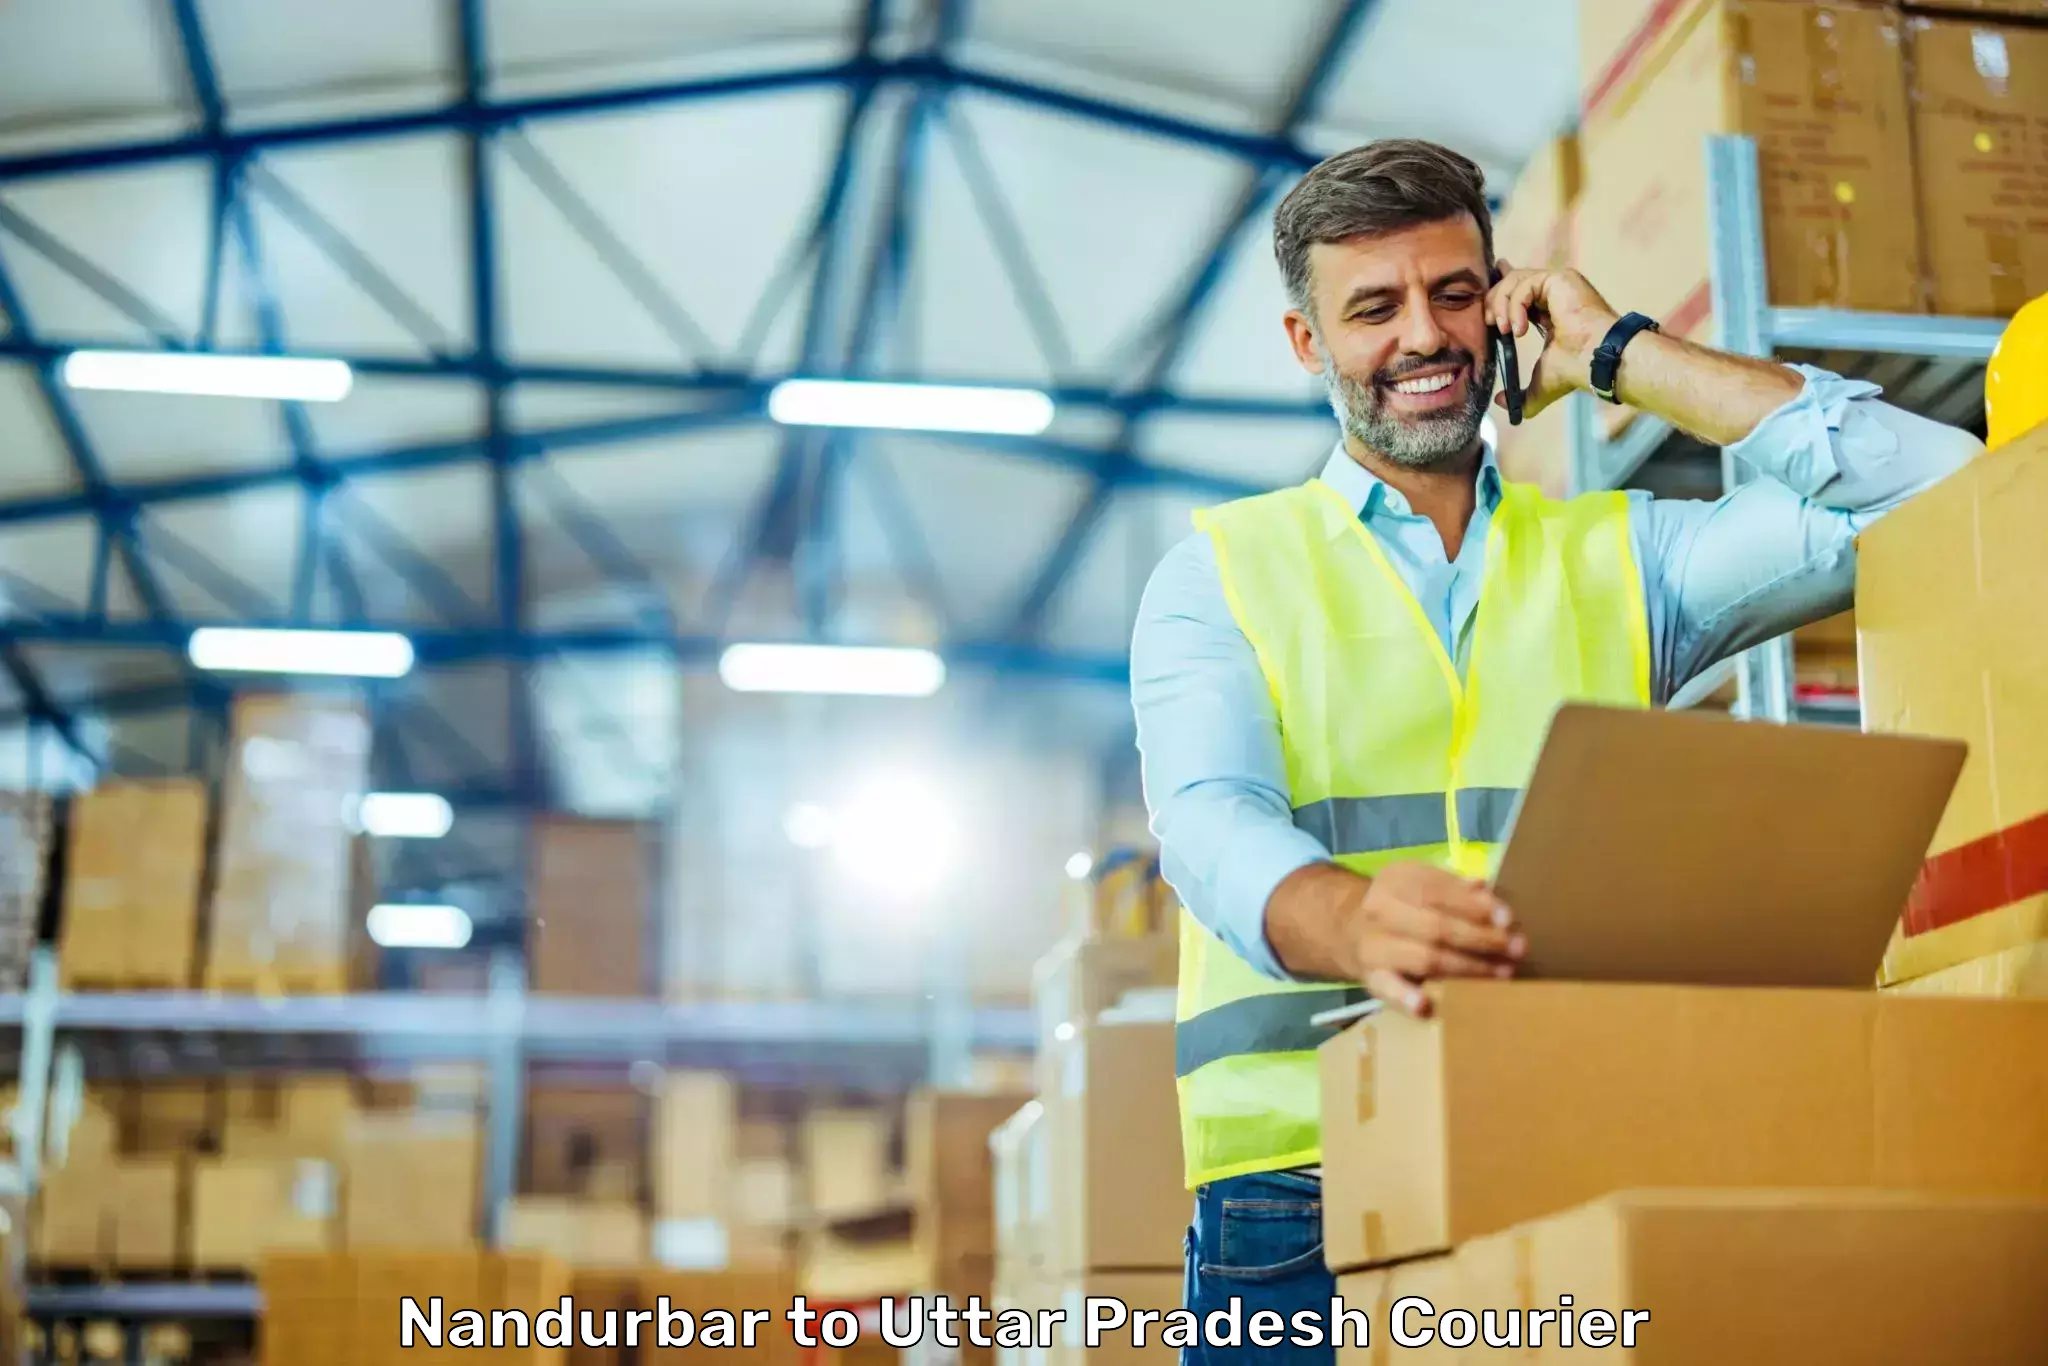 Next-day freight services Nandurbar to Bijnor